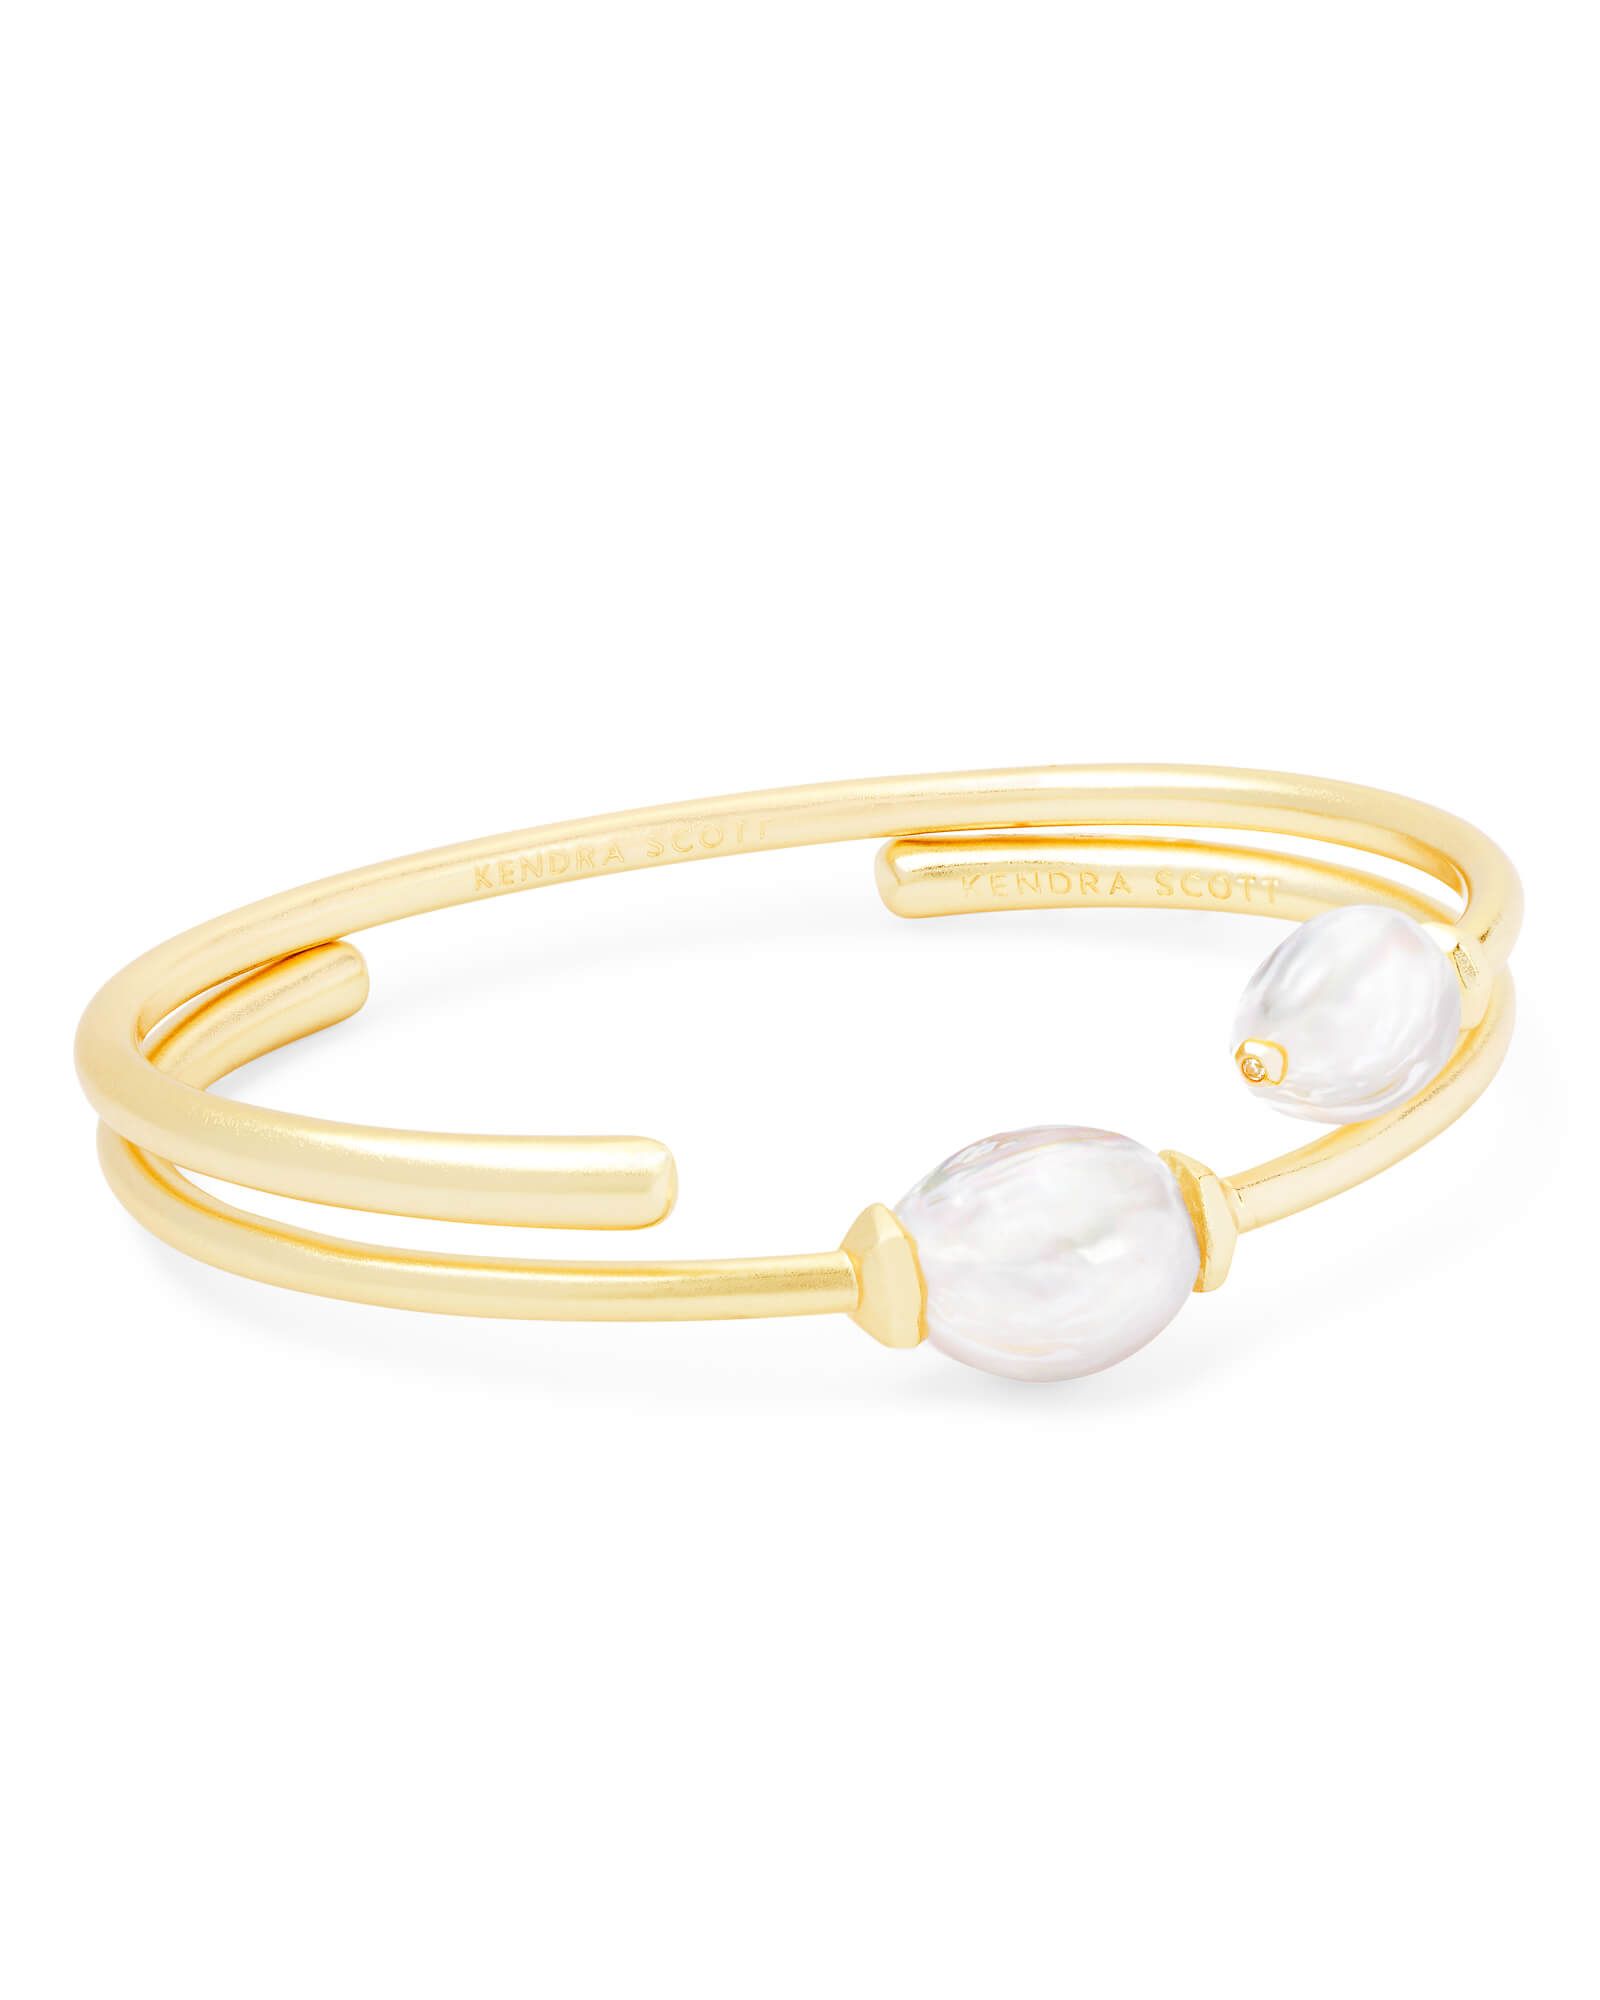 Amiya Gold Cuff Bracelet in Pearl | Kendra Scott | Kendra Scott